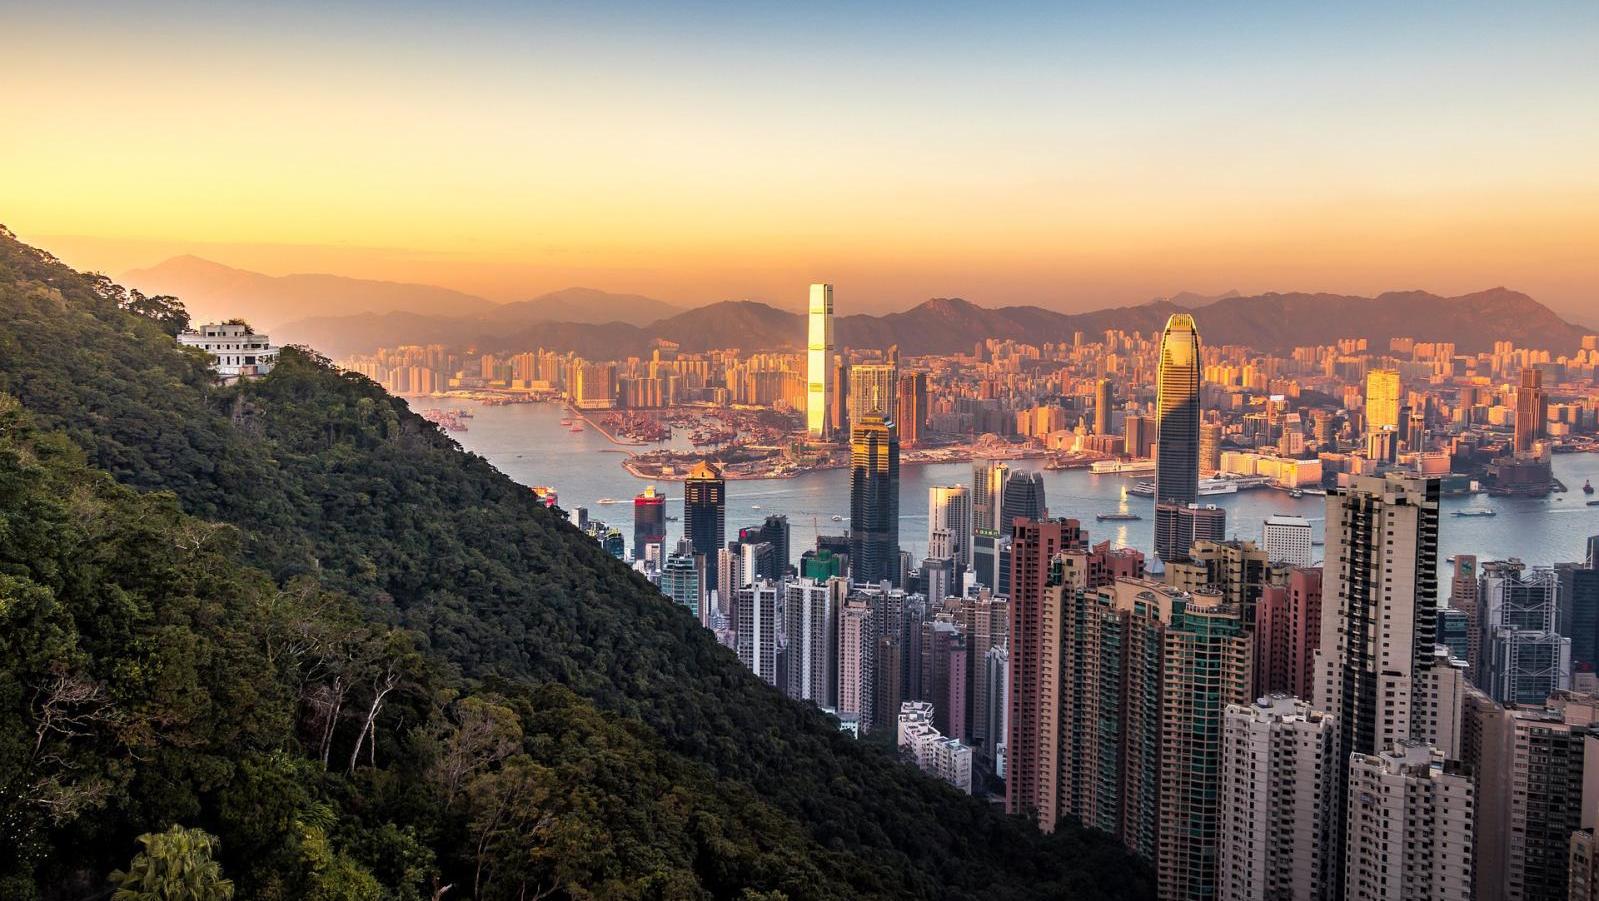   Art Market Overview: Hong Kong, a Strategic Location